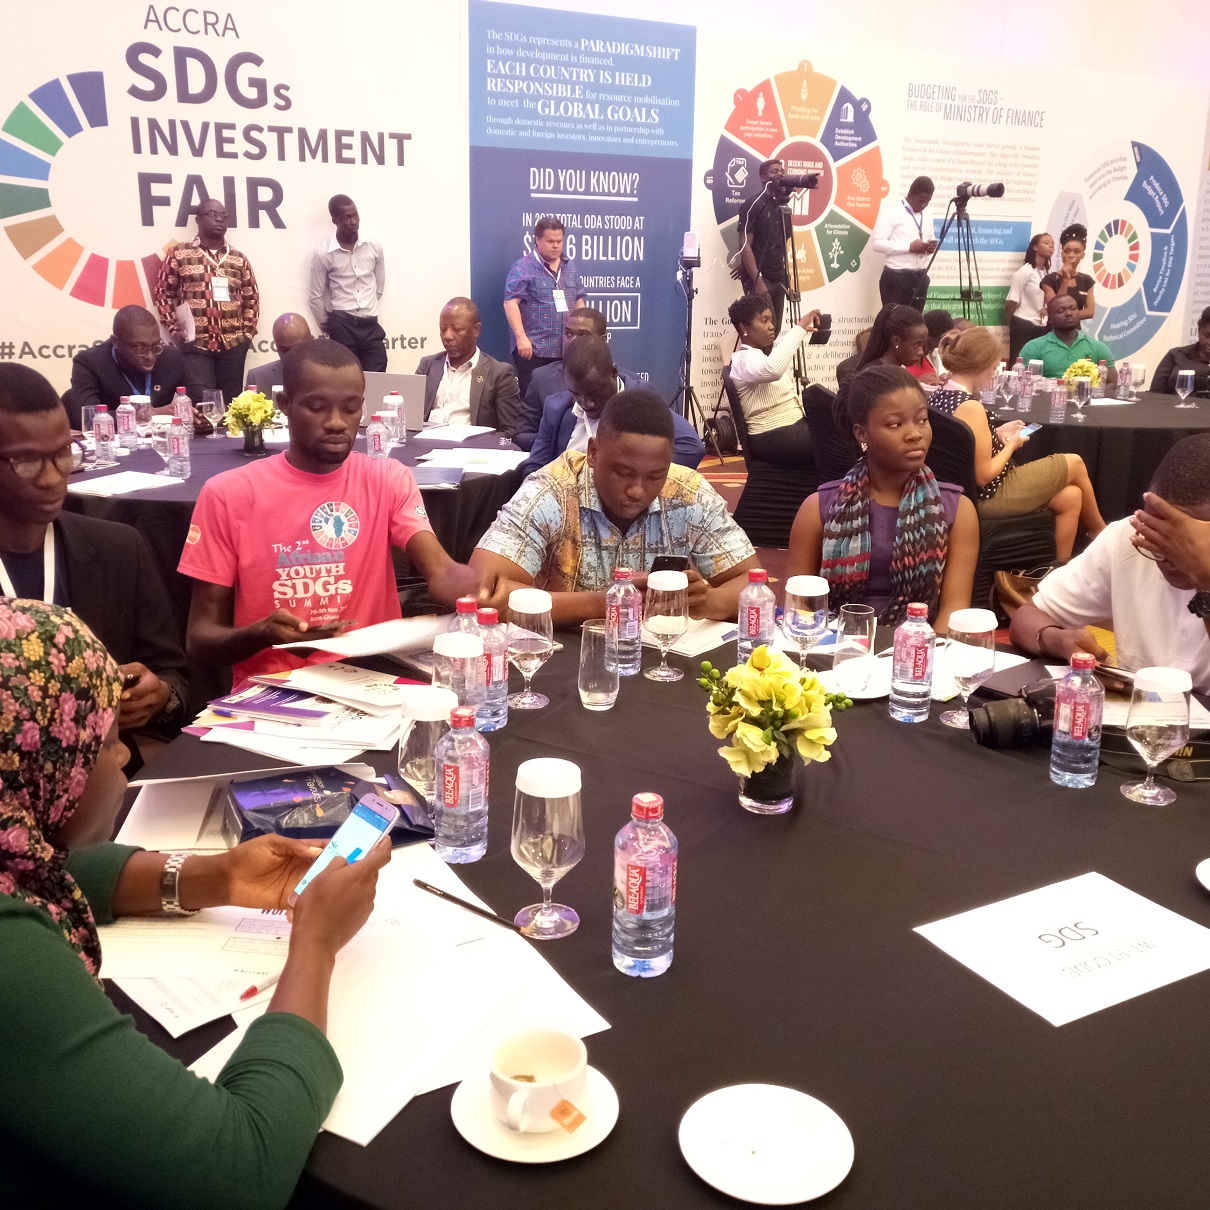 2018 SDGs Investment Fair